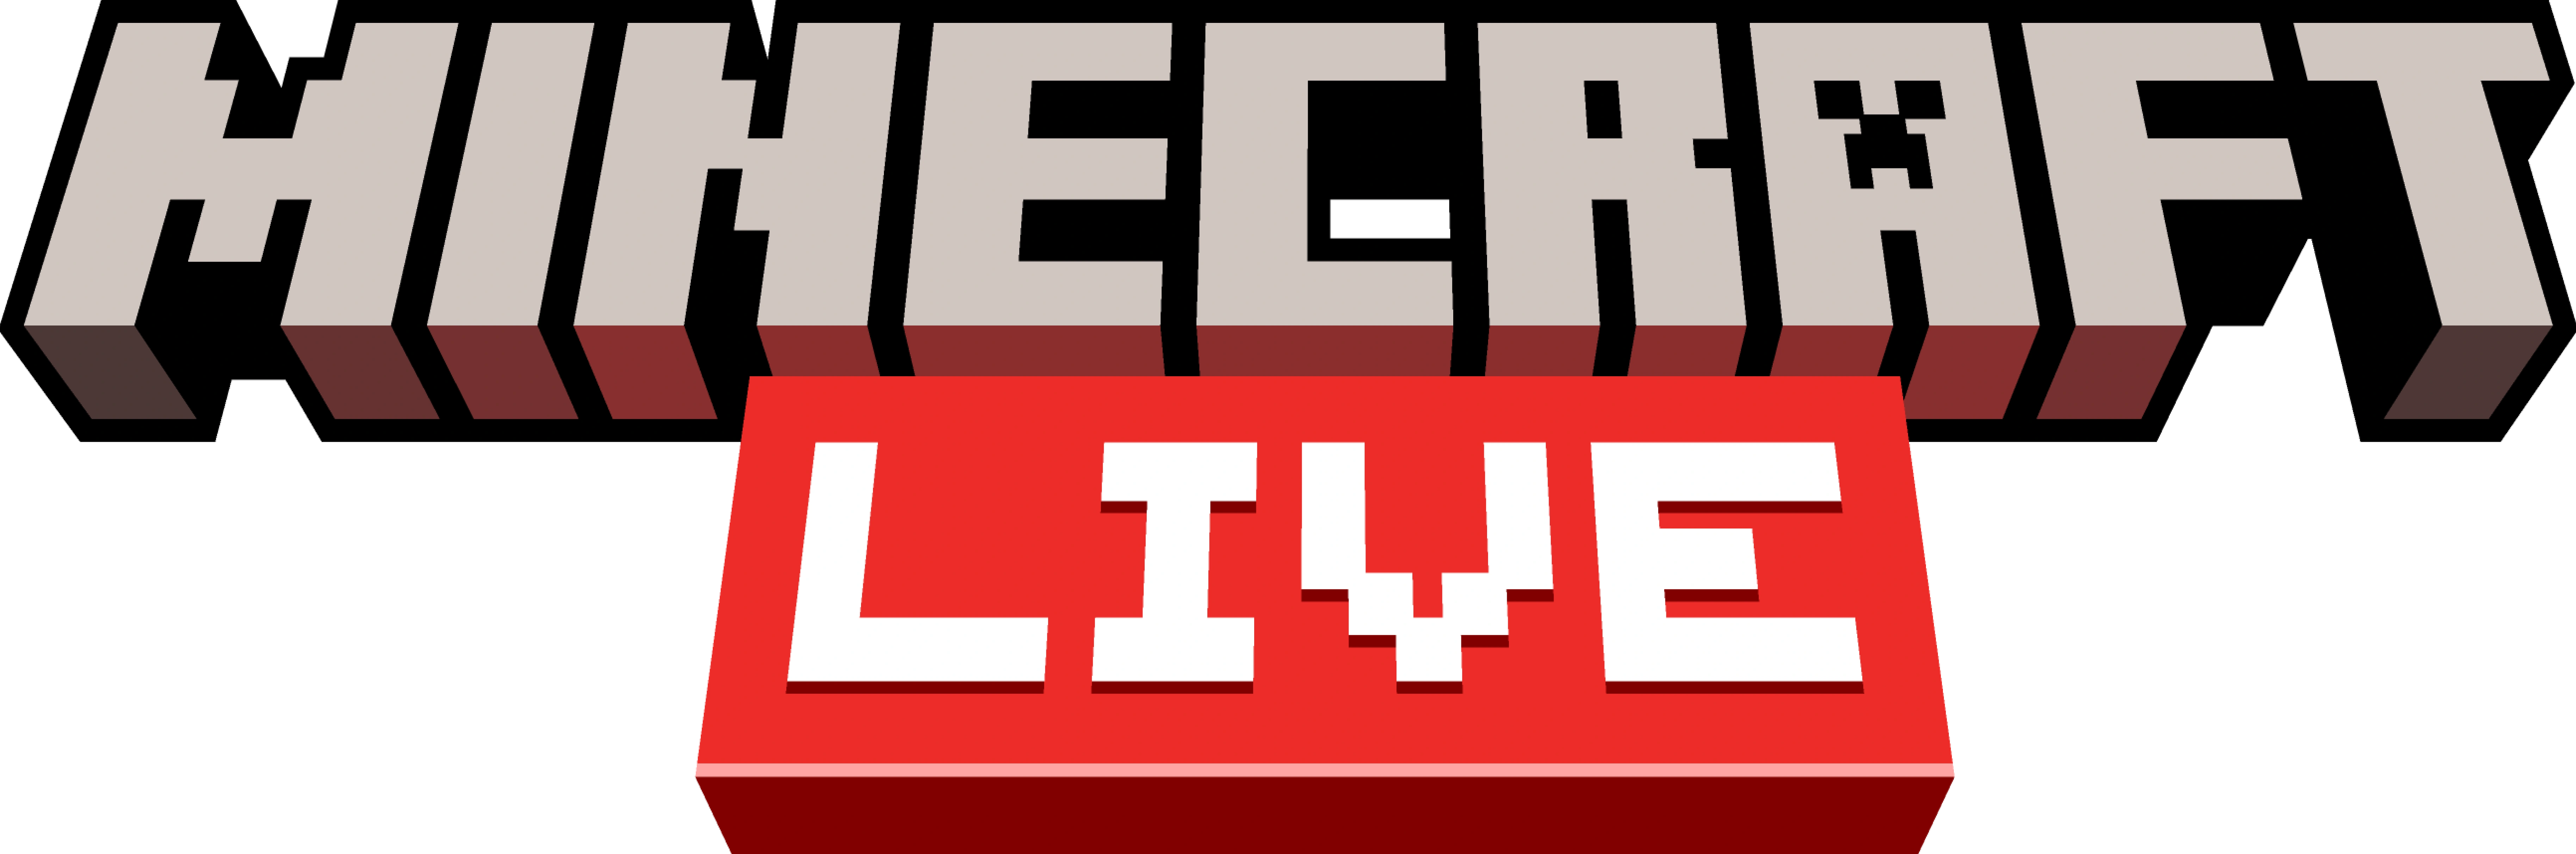 Minecraft Live 2023 - Minecraft Wiki